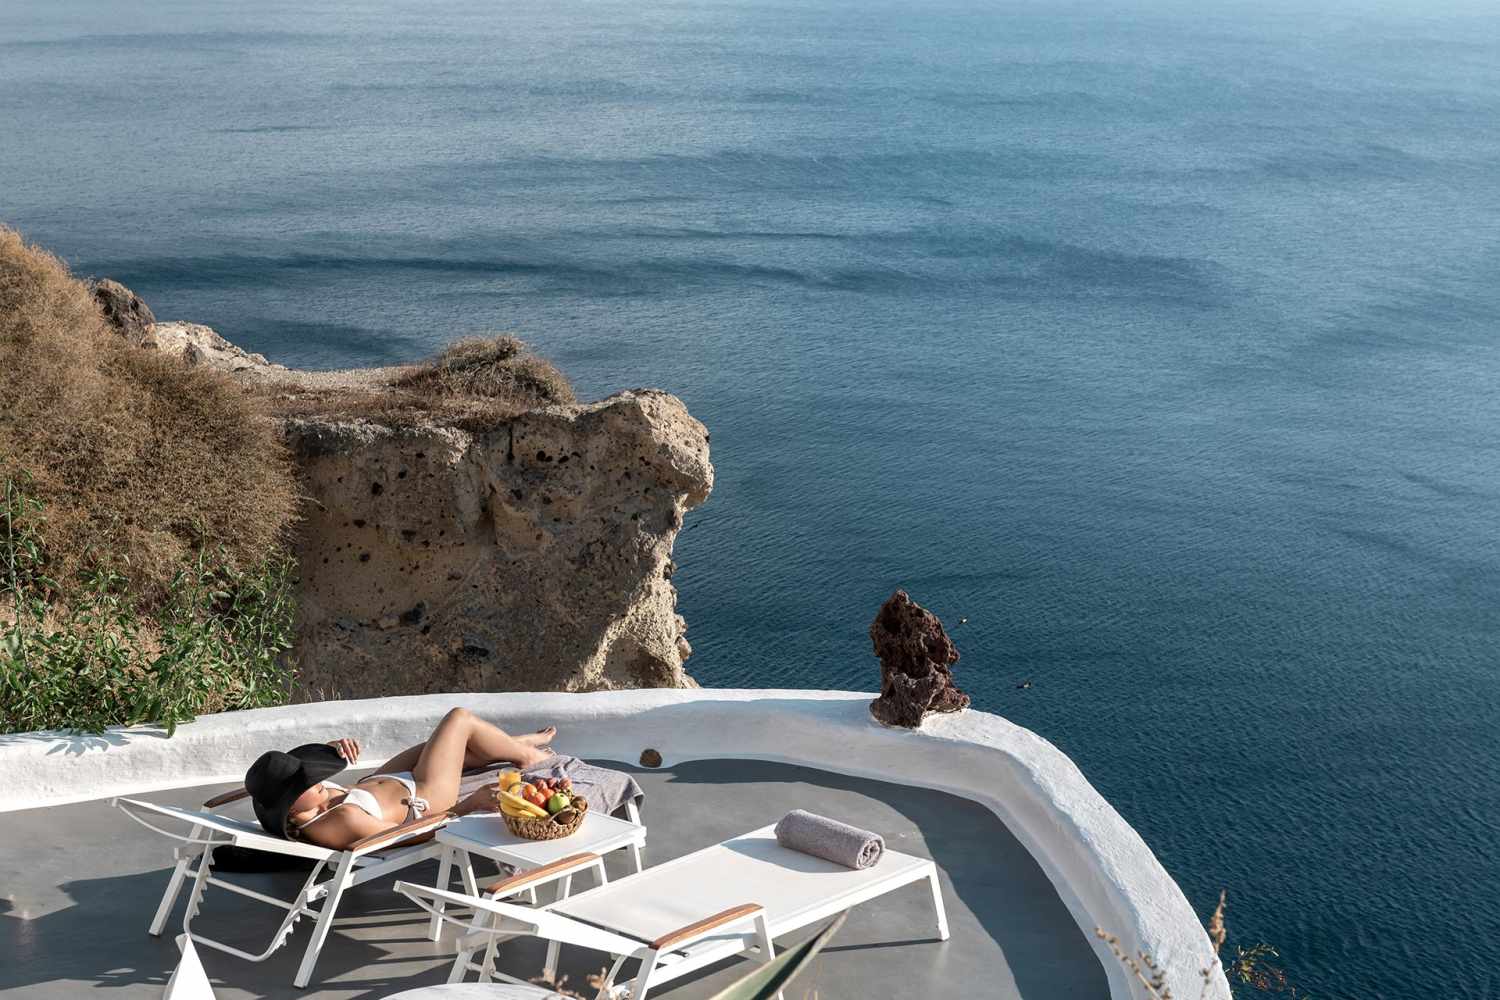 Caldera Premium Villas Santorini, cycladic Islands - Greece